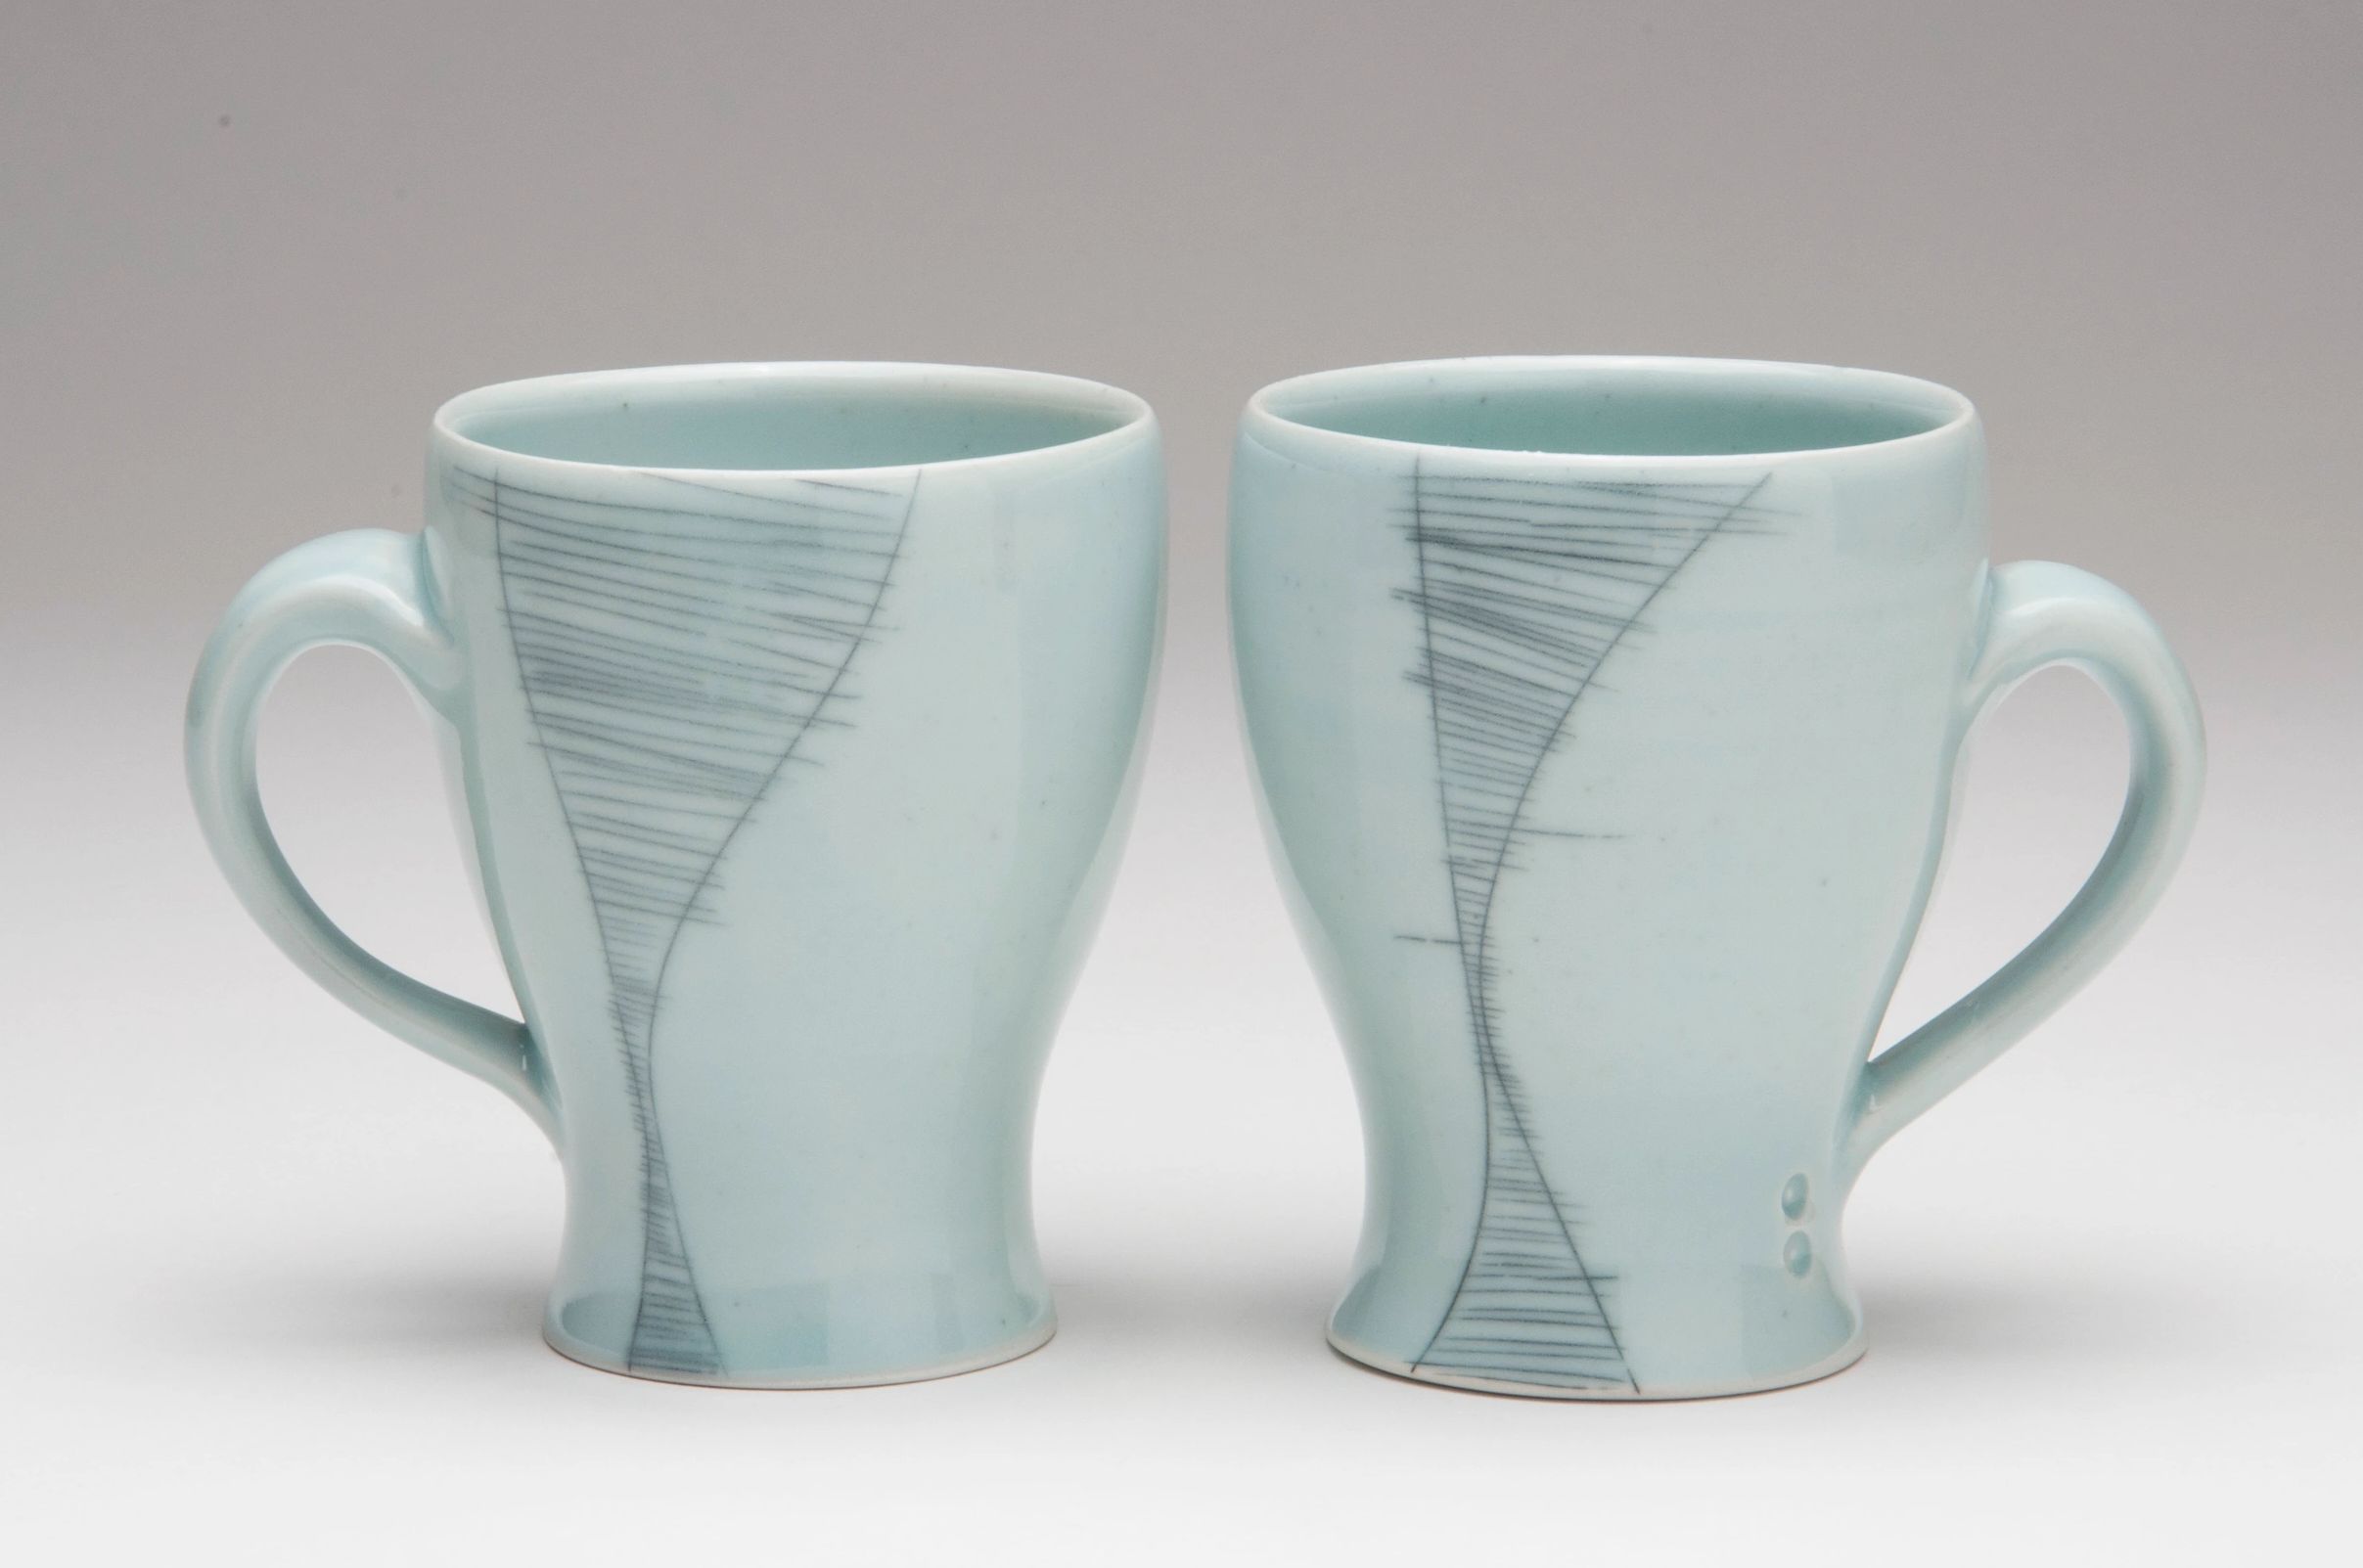 Two porcelain mugs glazed with a celadon glaze